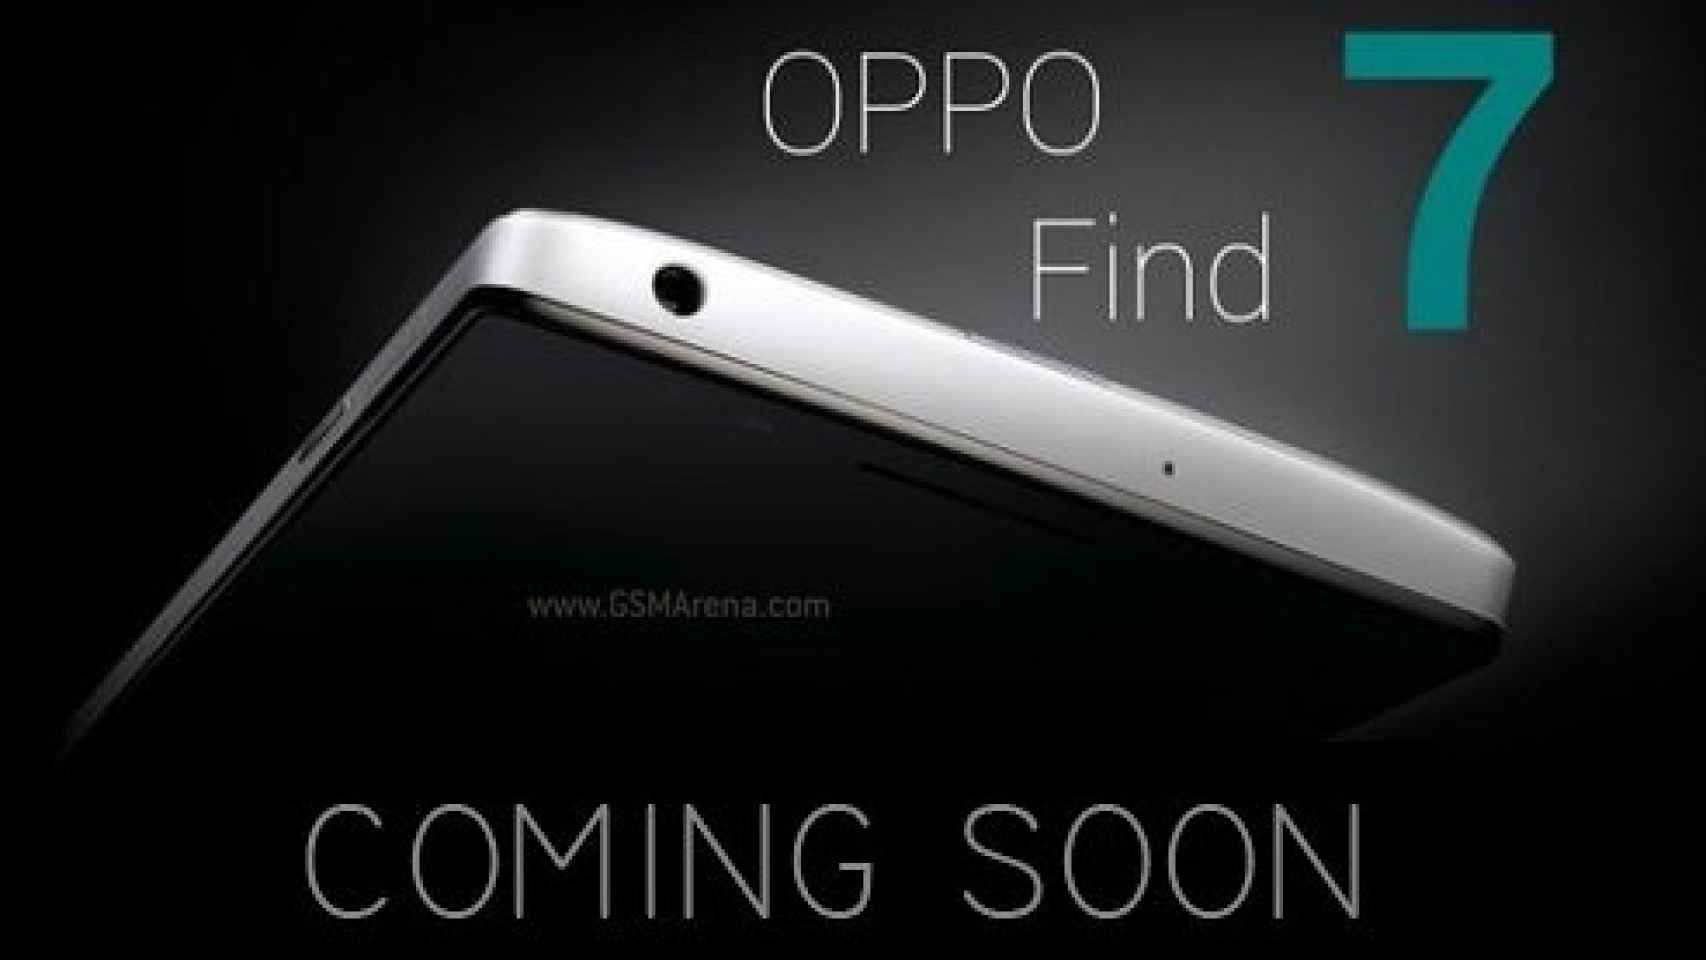 El Oppo Find 7 aparece fugazmente con Snapdragon 800 y batería de 4000 mAh